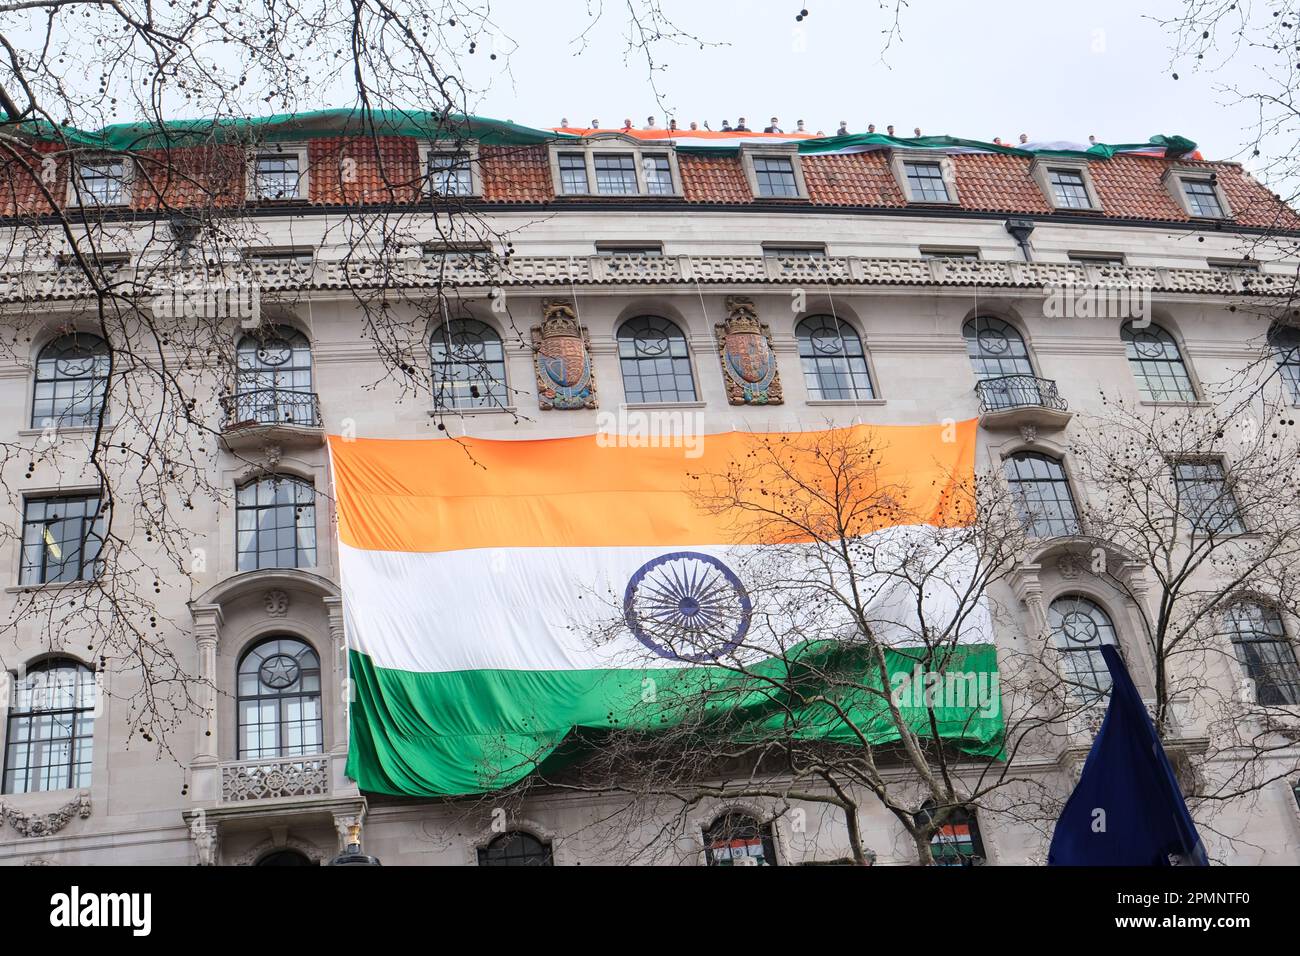 Le personnel diplomatique de la haute Commission indienne agitent un grand tricolore sur le toit tandis que des militants protestent contre les arrestations de Sikhs au Punjab. Banque D'Images